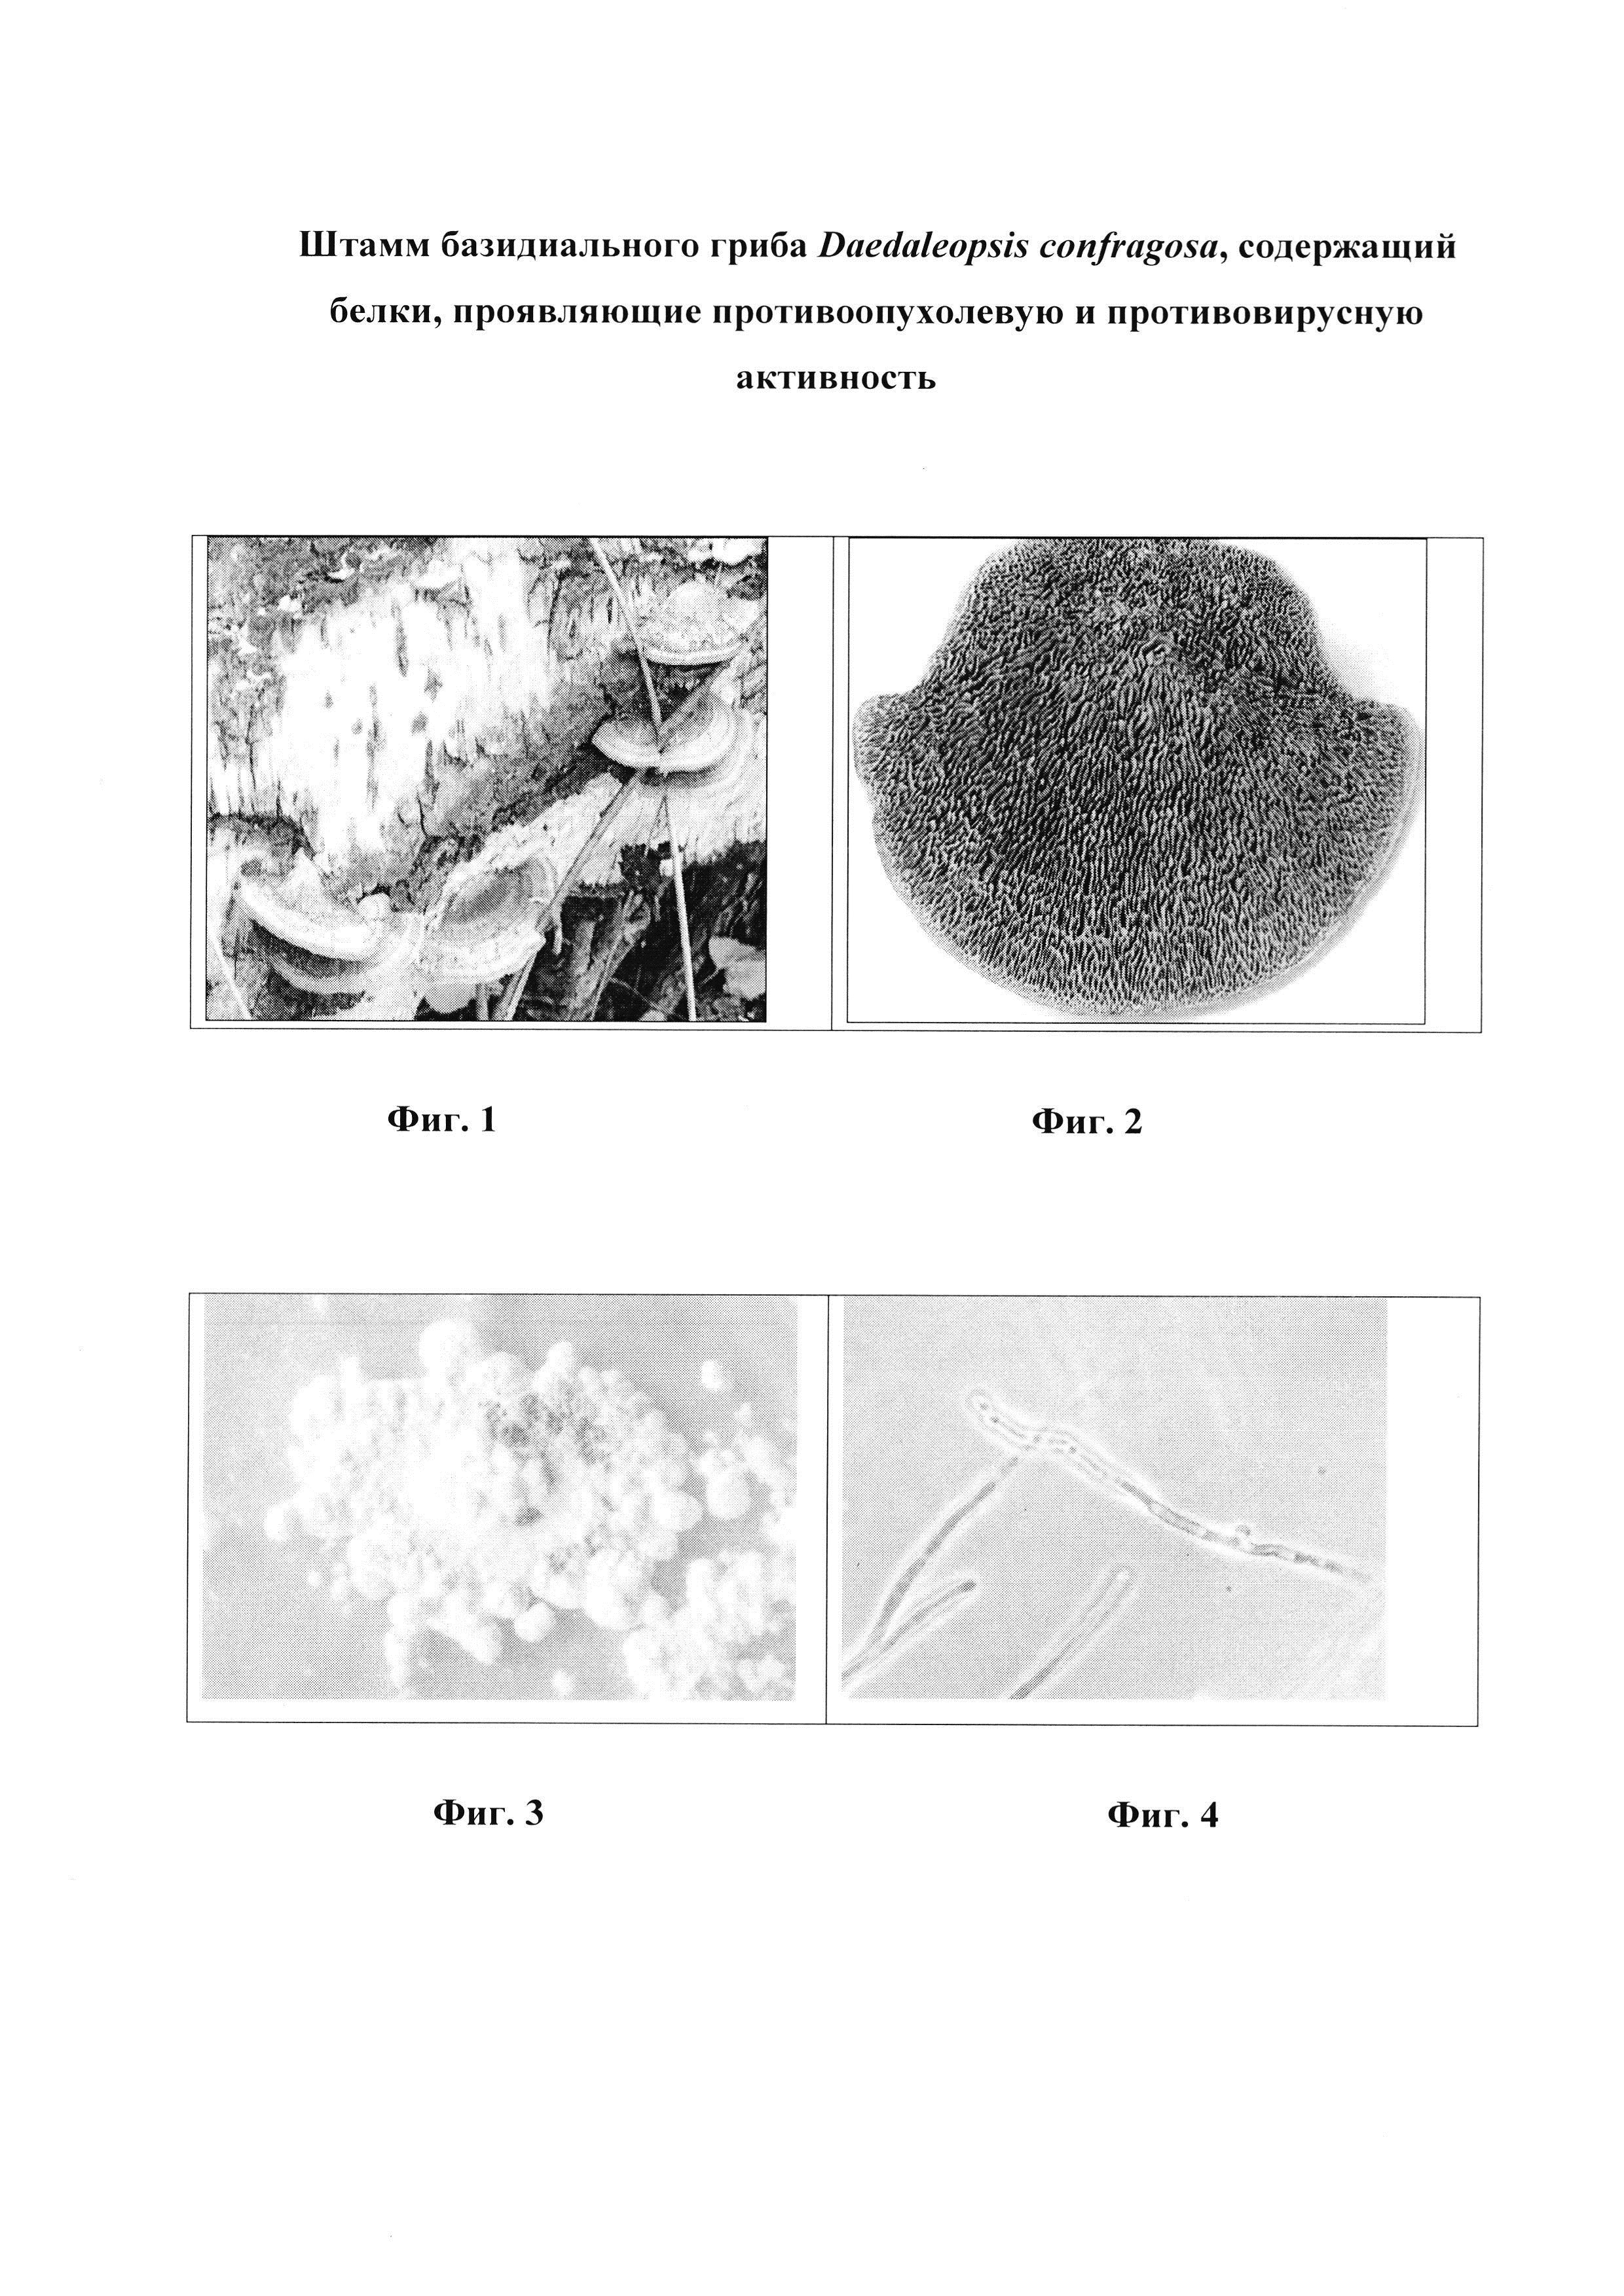 Штамм базидиального гриба Daedaleopsis confragosa, содержащий белки, проявляющие противоопухолевую и противовирусную активность